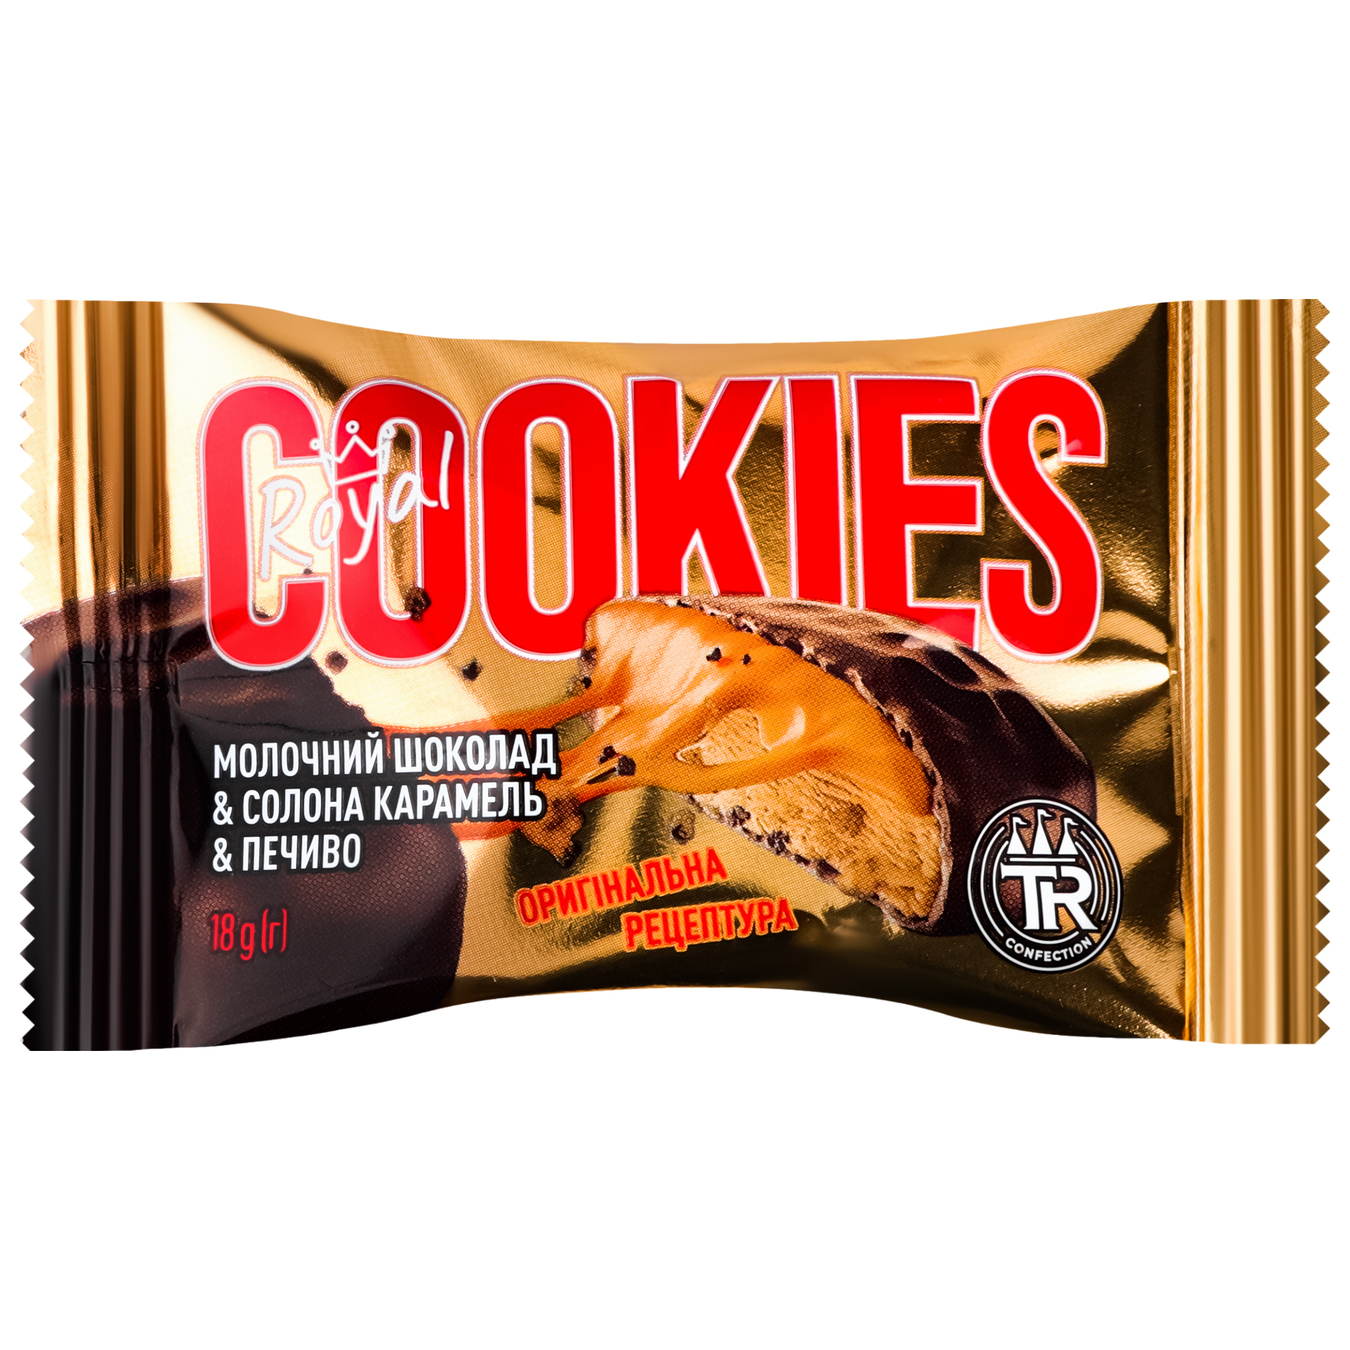 Печиво TruffRoyal 18г Cookies солон кар